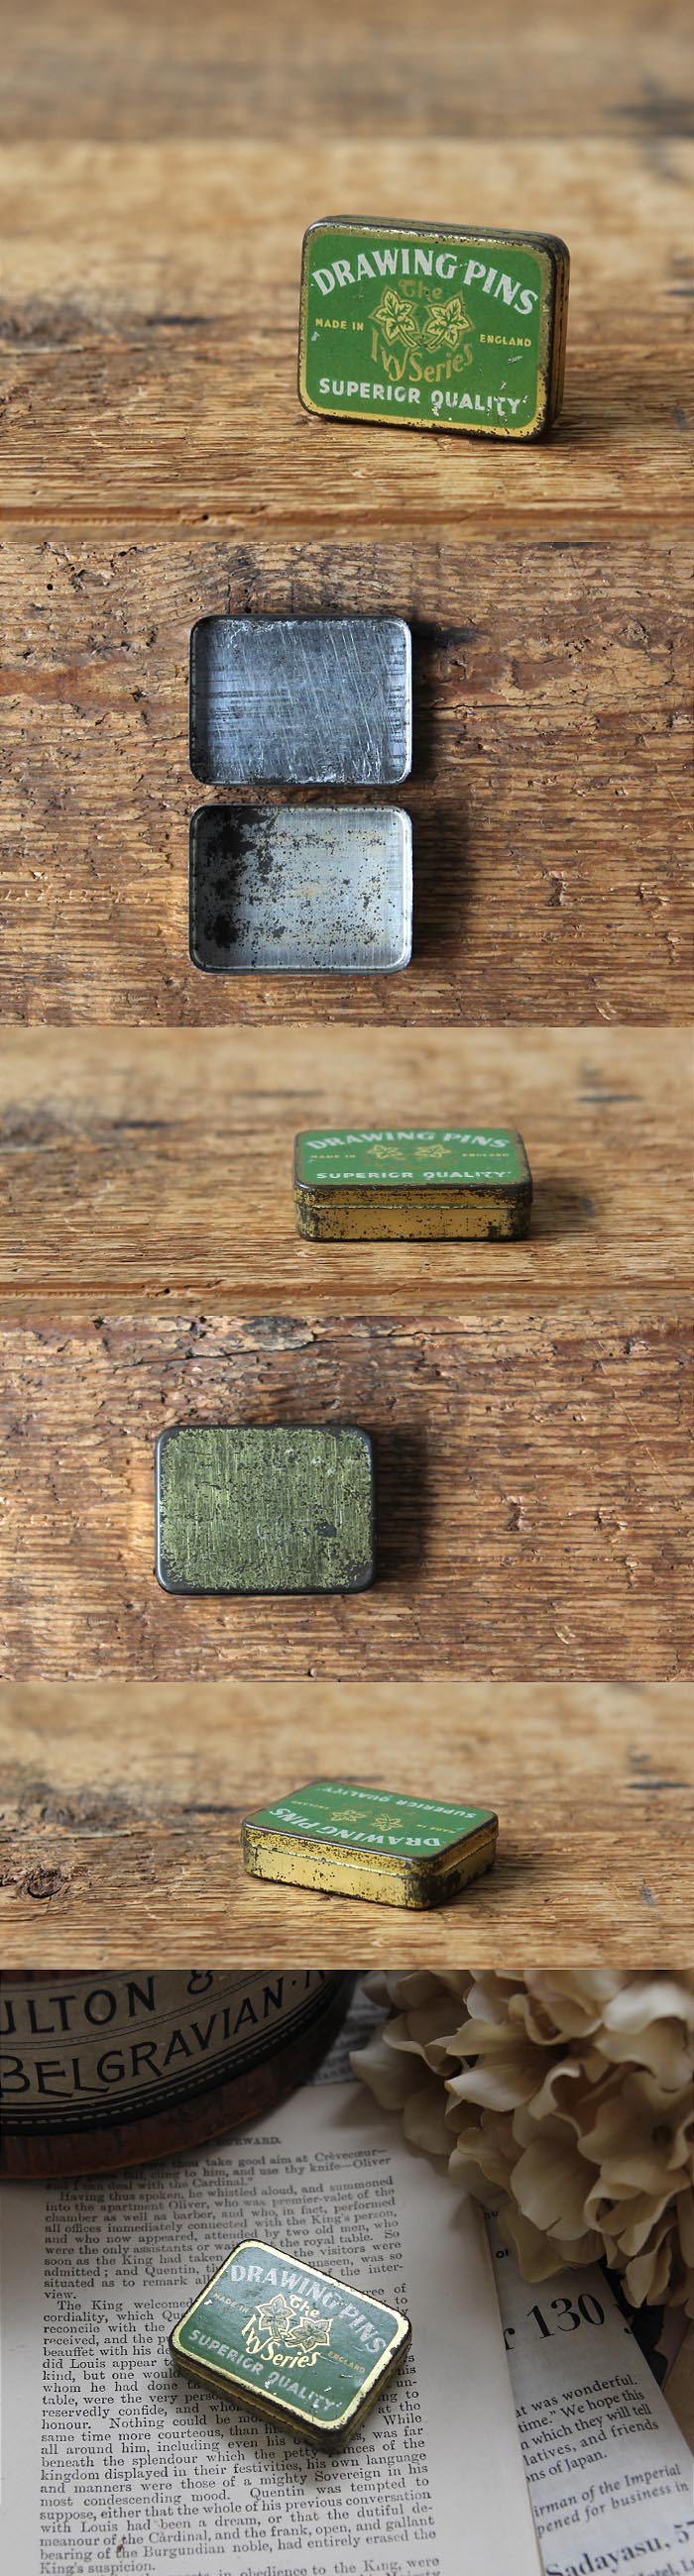 イギリス アンティーク ミニ缶 ブリキ 画鋲 インテリア雑貨「DRAWING PINS TIN缶」P-259